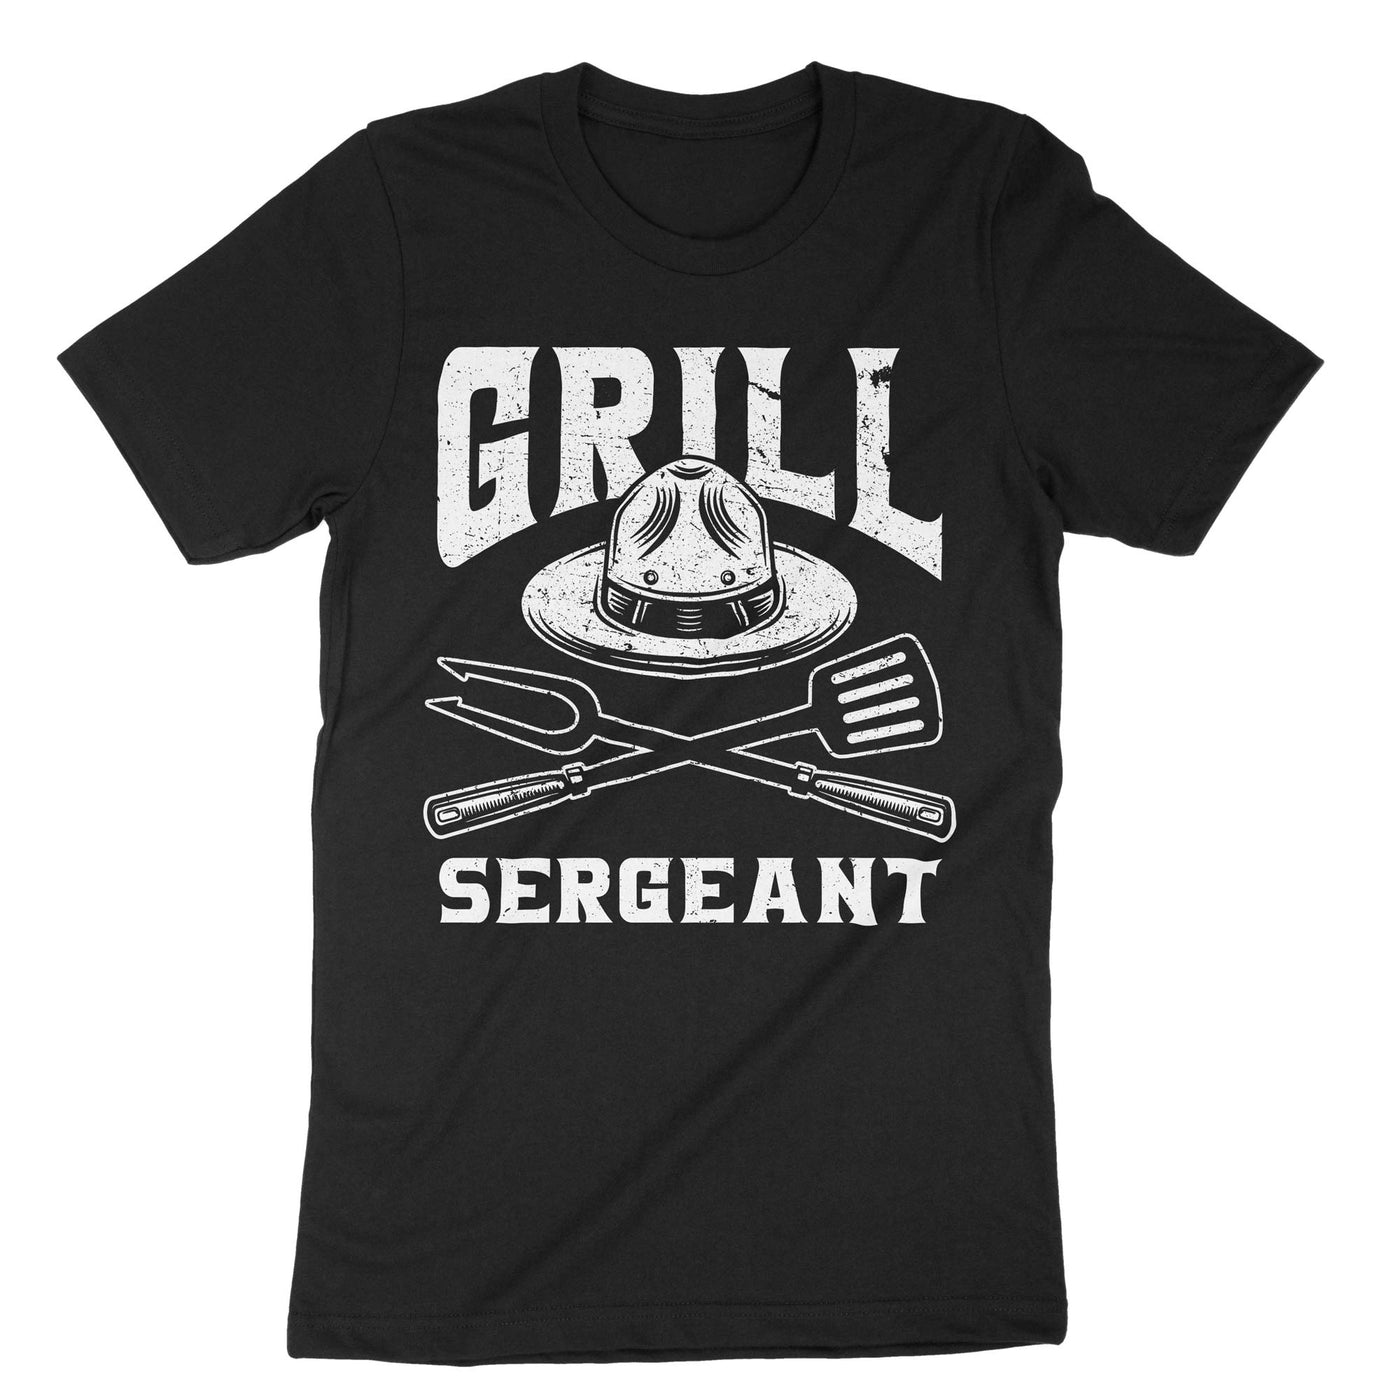 Black Grill Sergeant T-Shirt#color_black